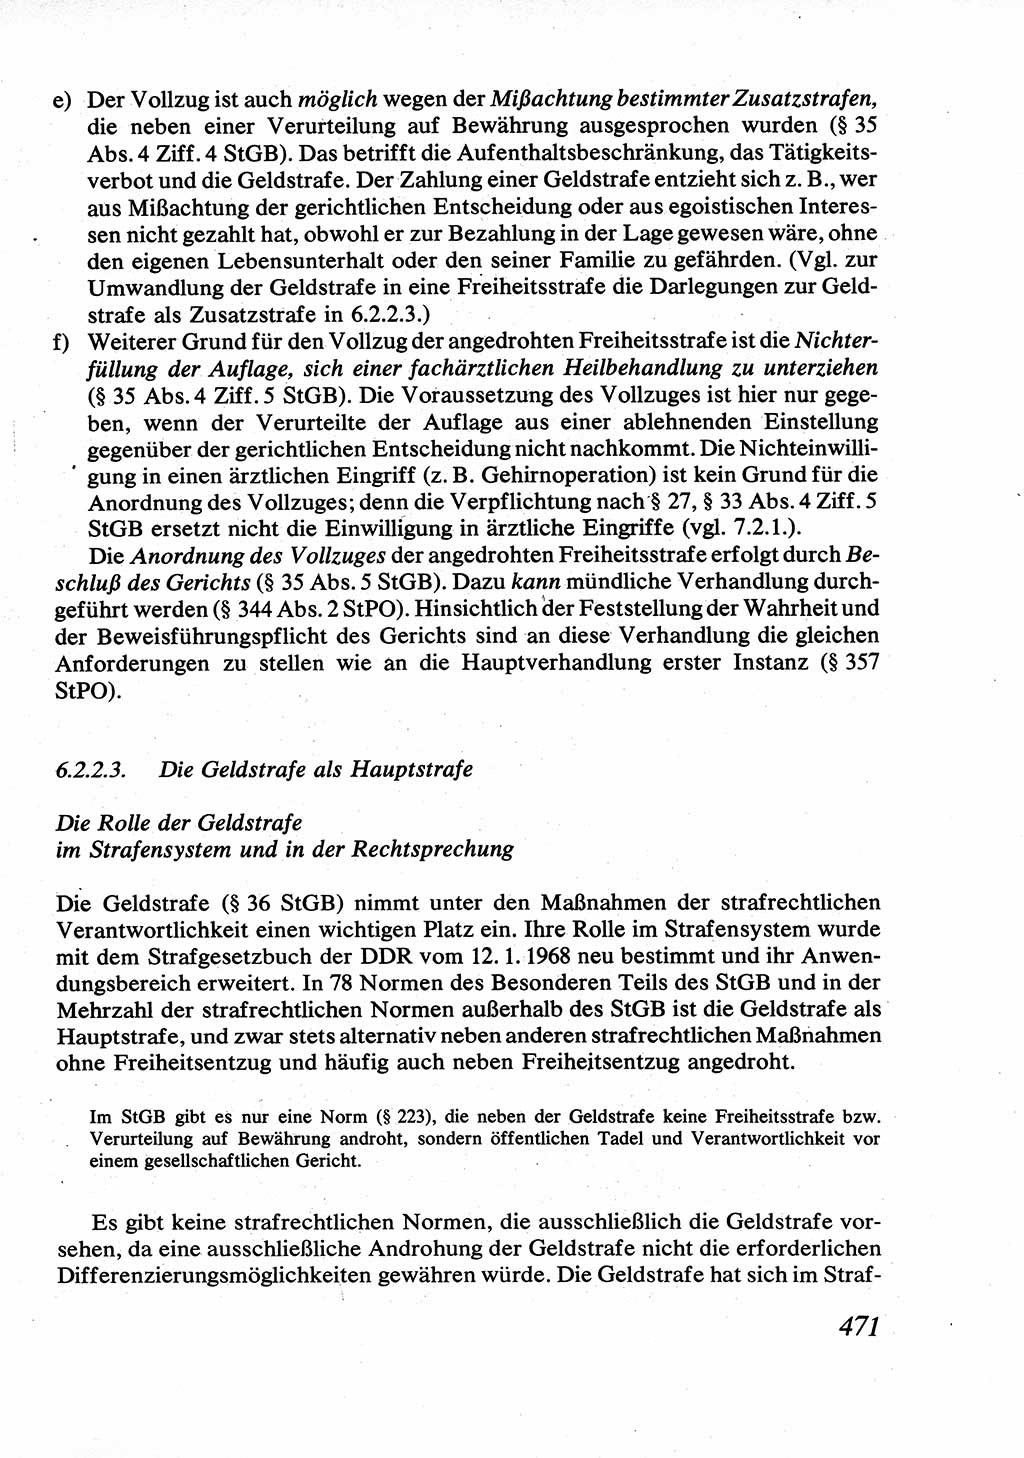 Strafrecht [Deutsche Demokratische Republik (DDR)], Allgemeiner Teil, Lehrbuch 1976, Seite 471 (Strafr. DDR AT Lb. 1976, S. 471)